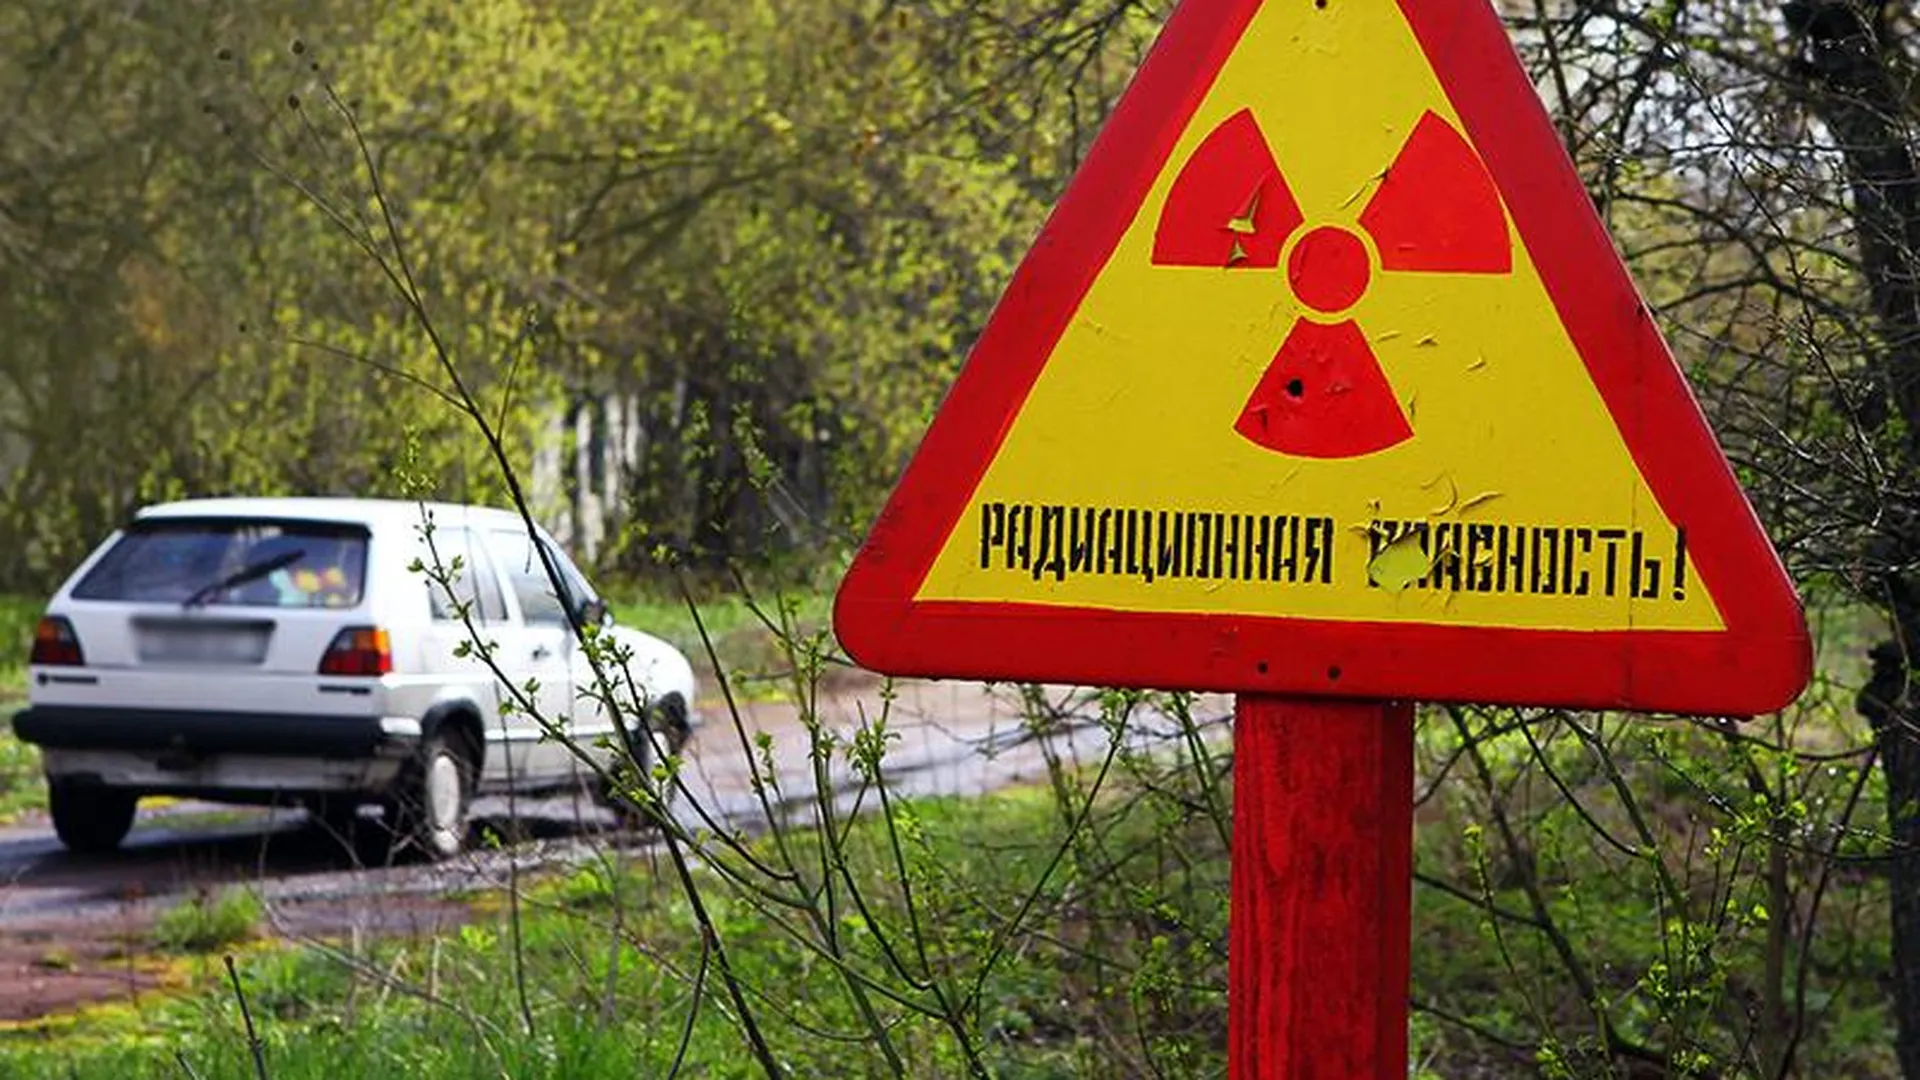 Дары Чернобыля: в подмосковном Роспотребнадзоре предупредили об опасности фонящих ягод